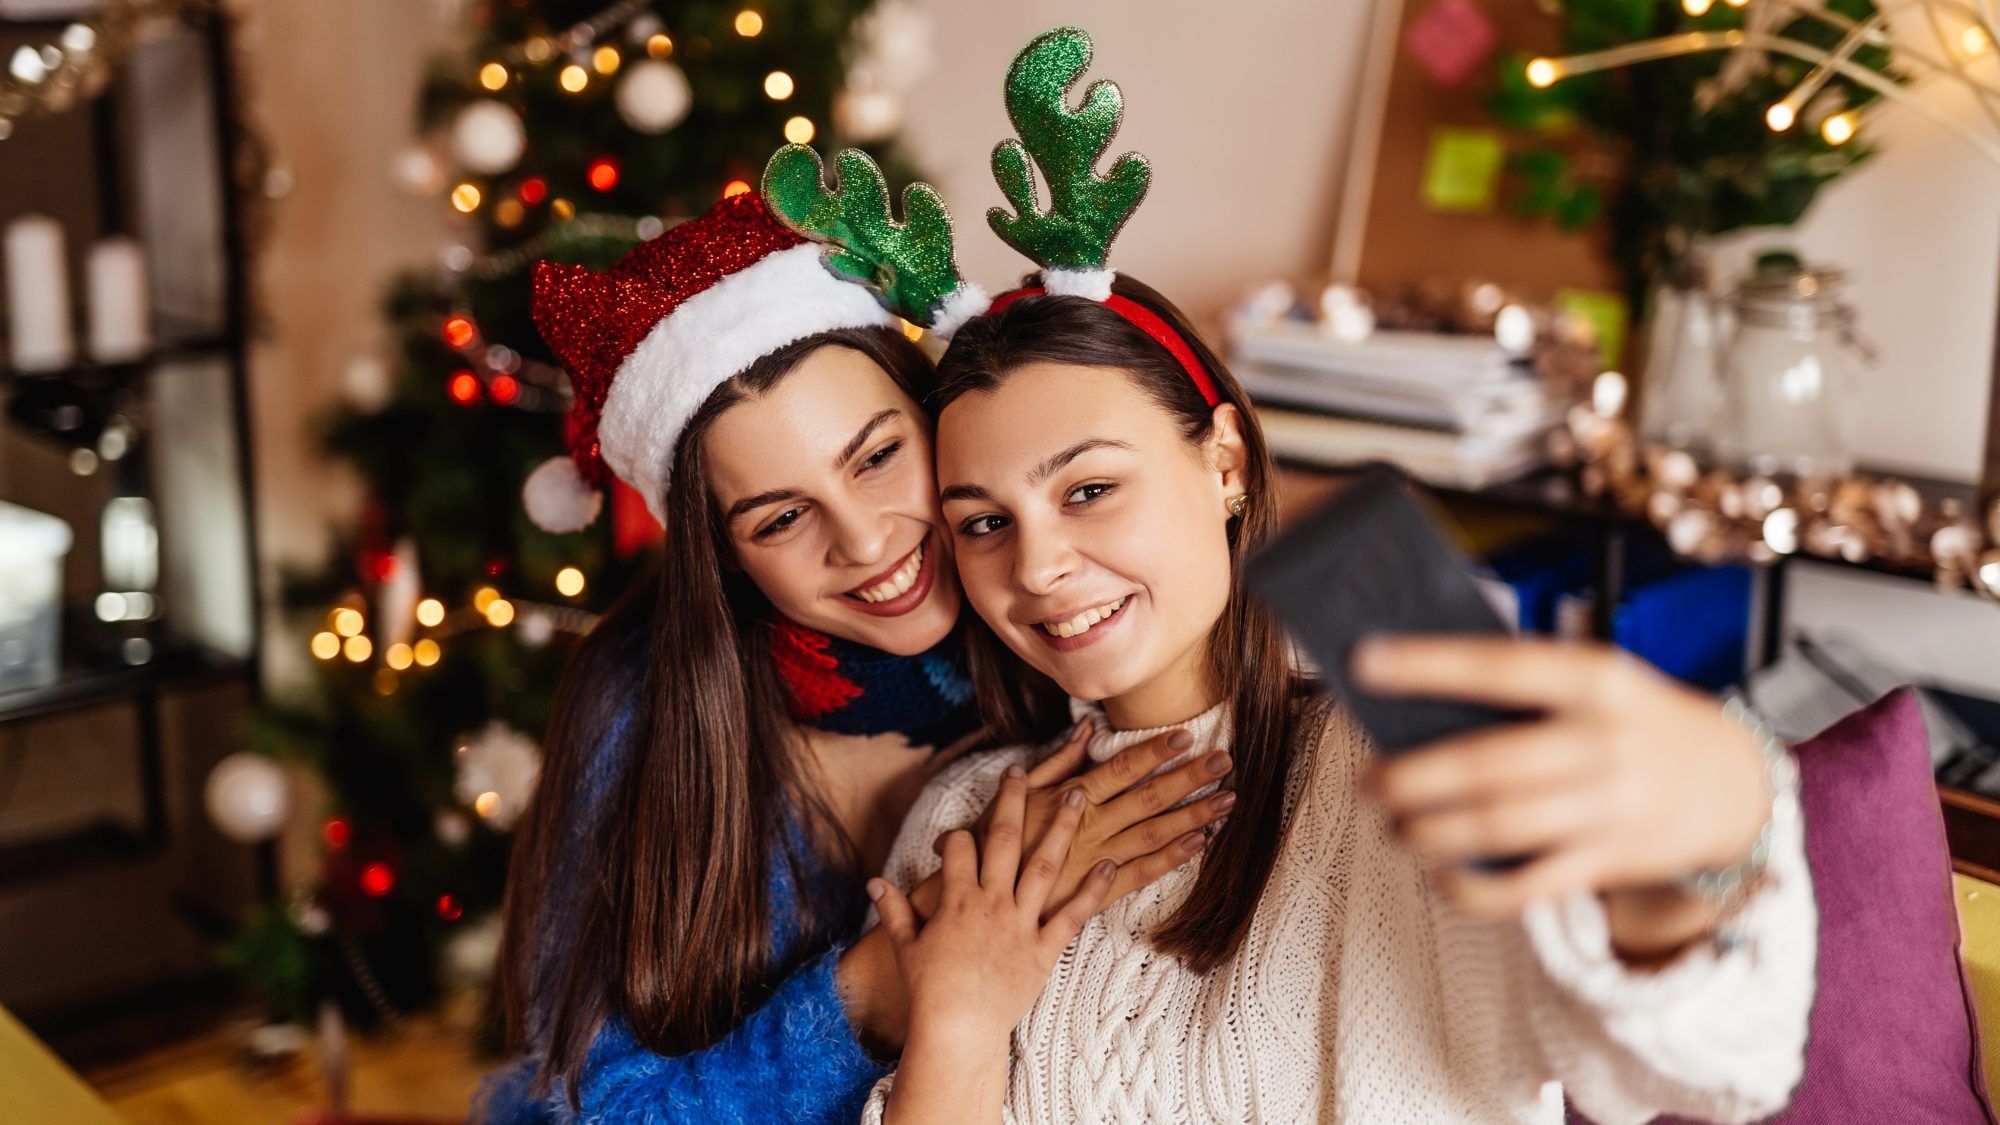 2020'de koronavirüs sırasında Noel nasıl güvenle kutlanır - kız kardeşler Noel şapkalarıyla birlikte fotoğraf çekiyorlar